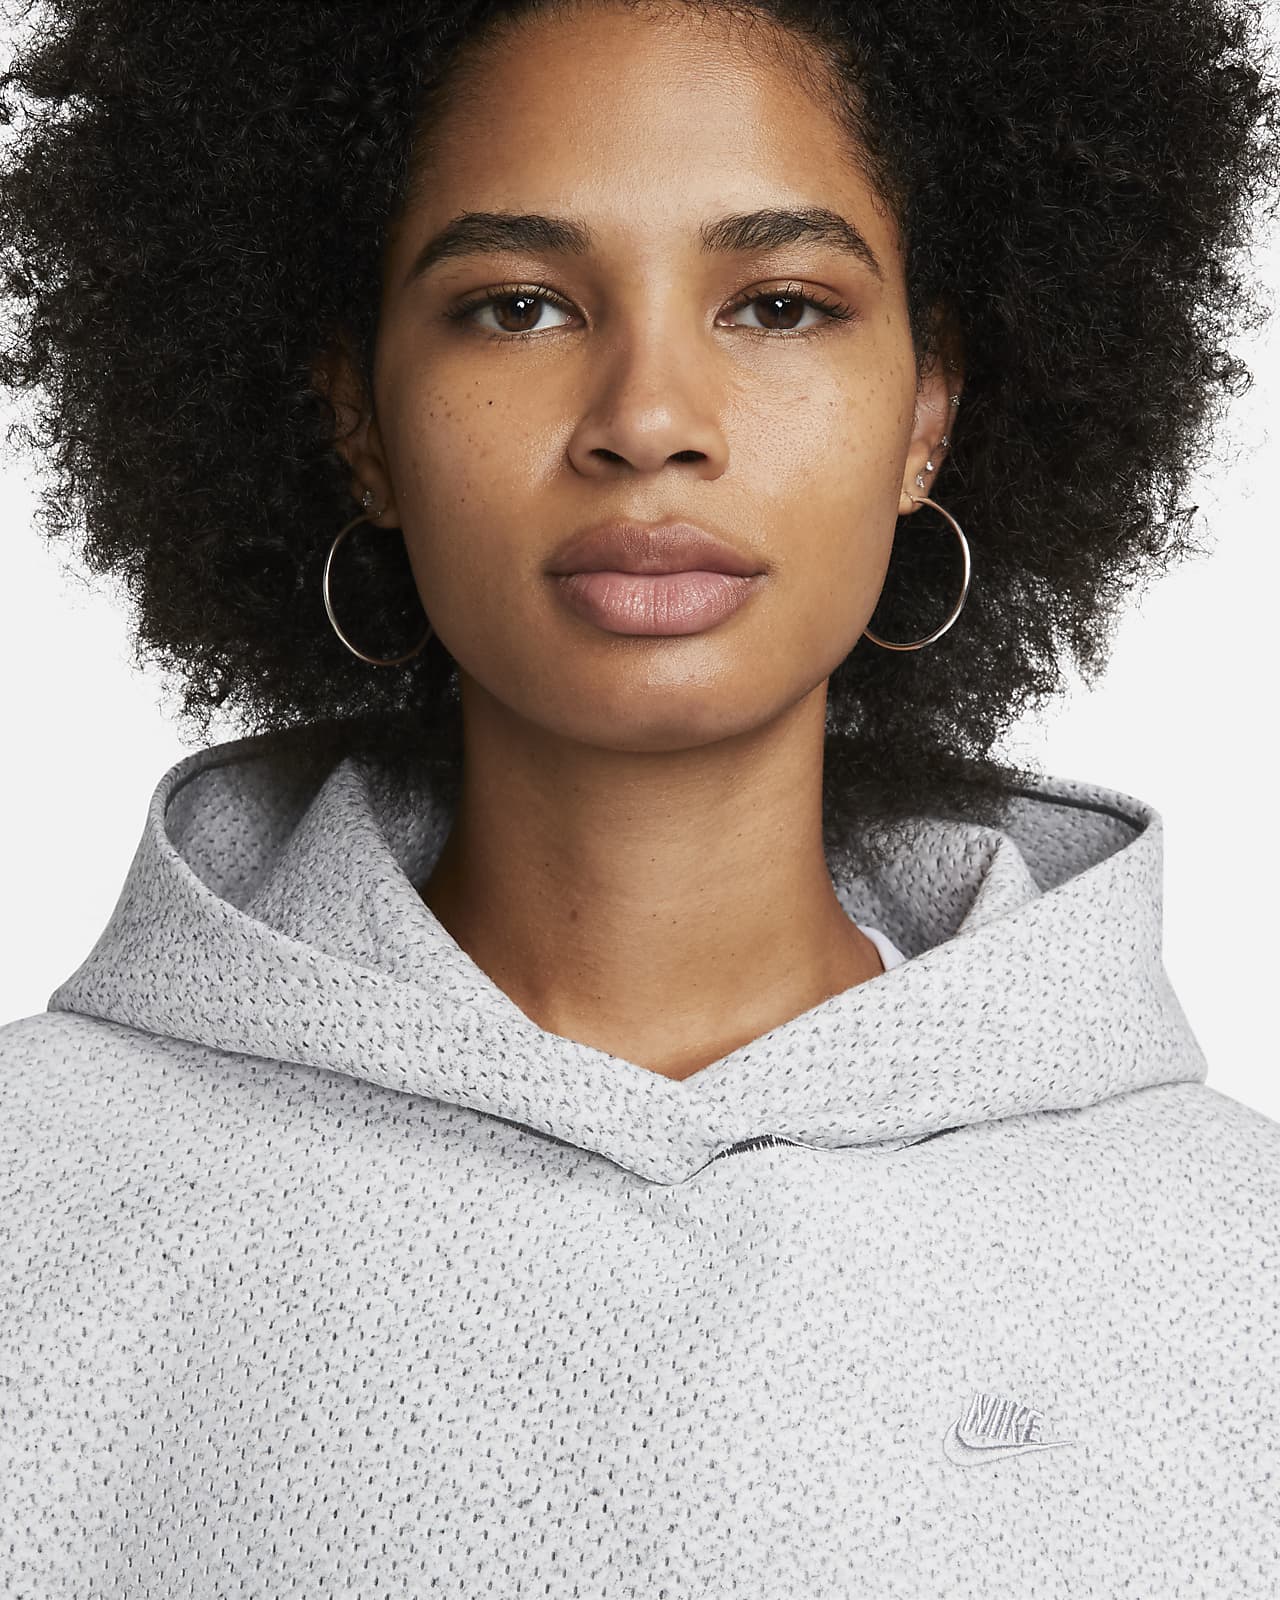 hoodie femme gris